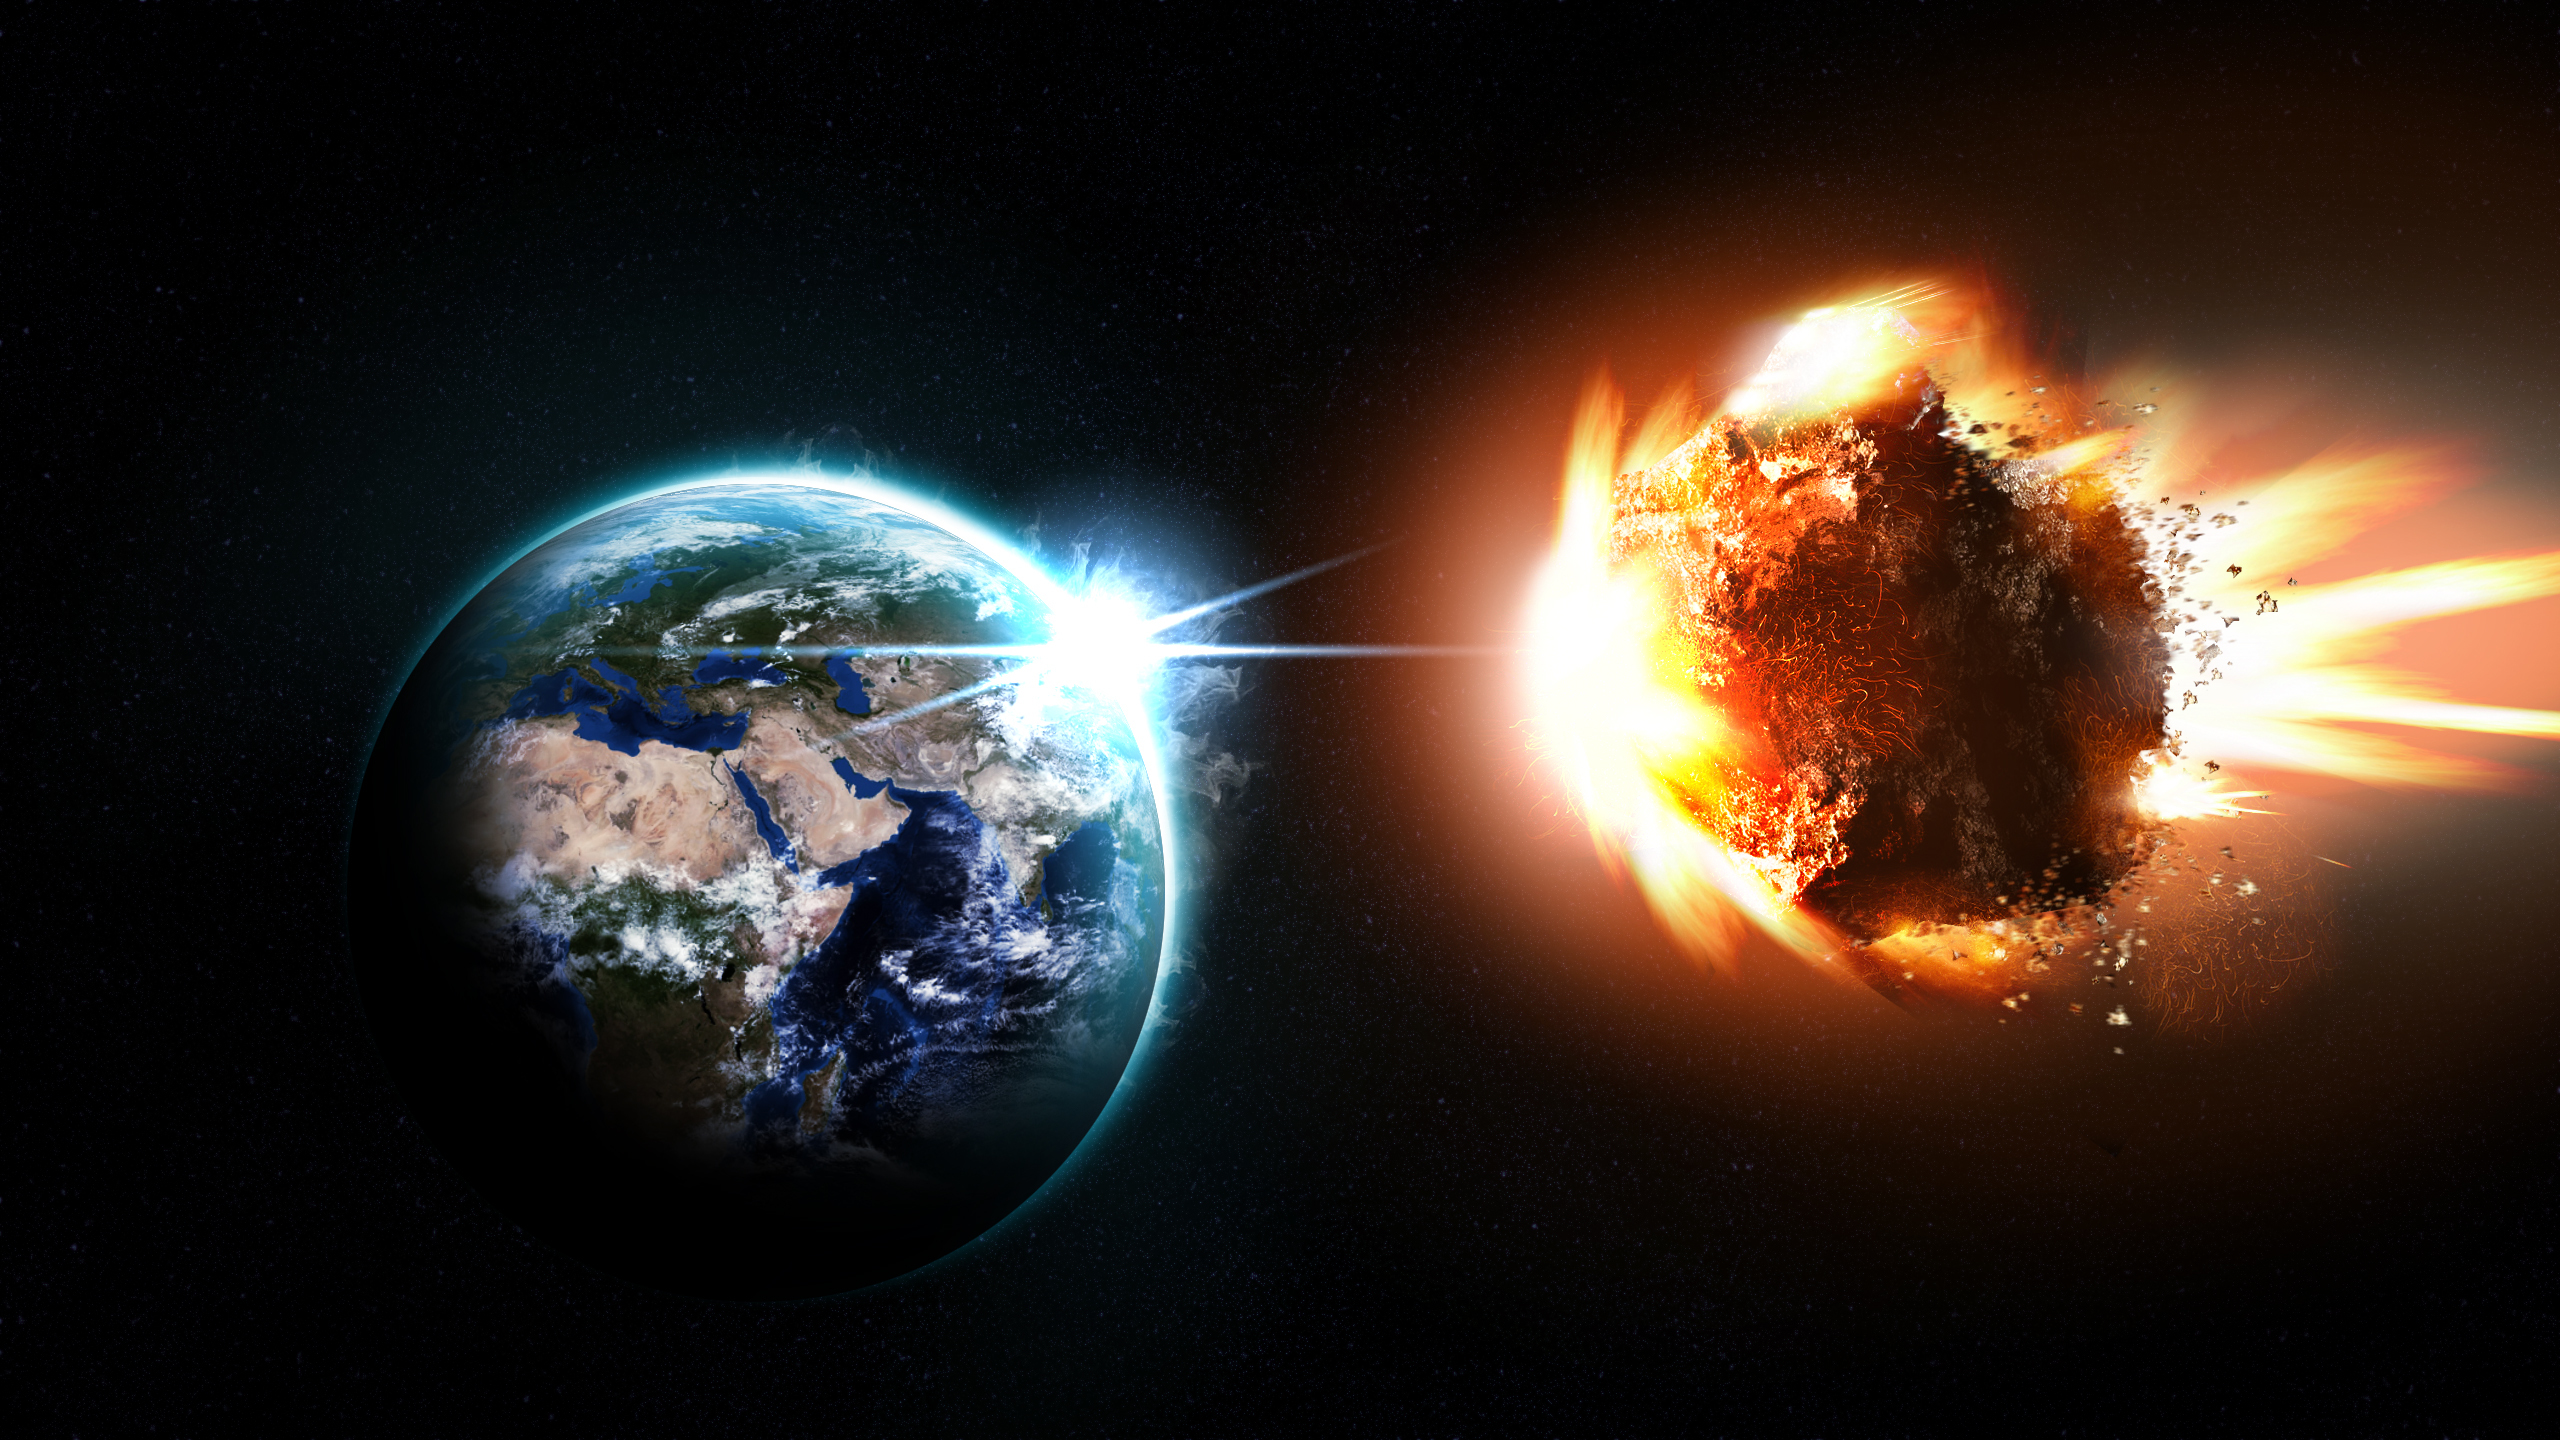 Обои планета метеорит картинки на рабочий стол на тему Космос - скачать без смс